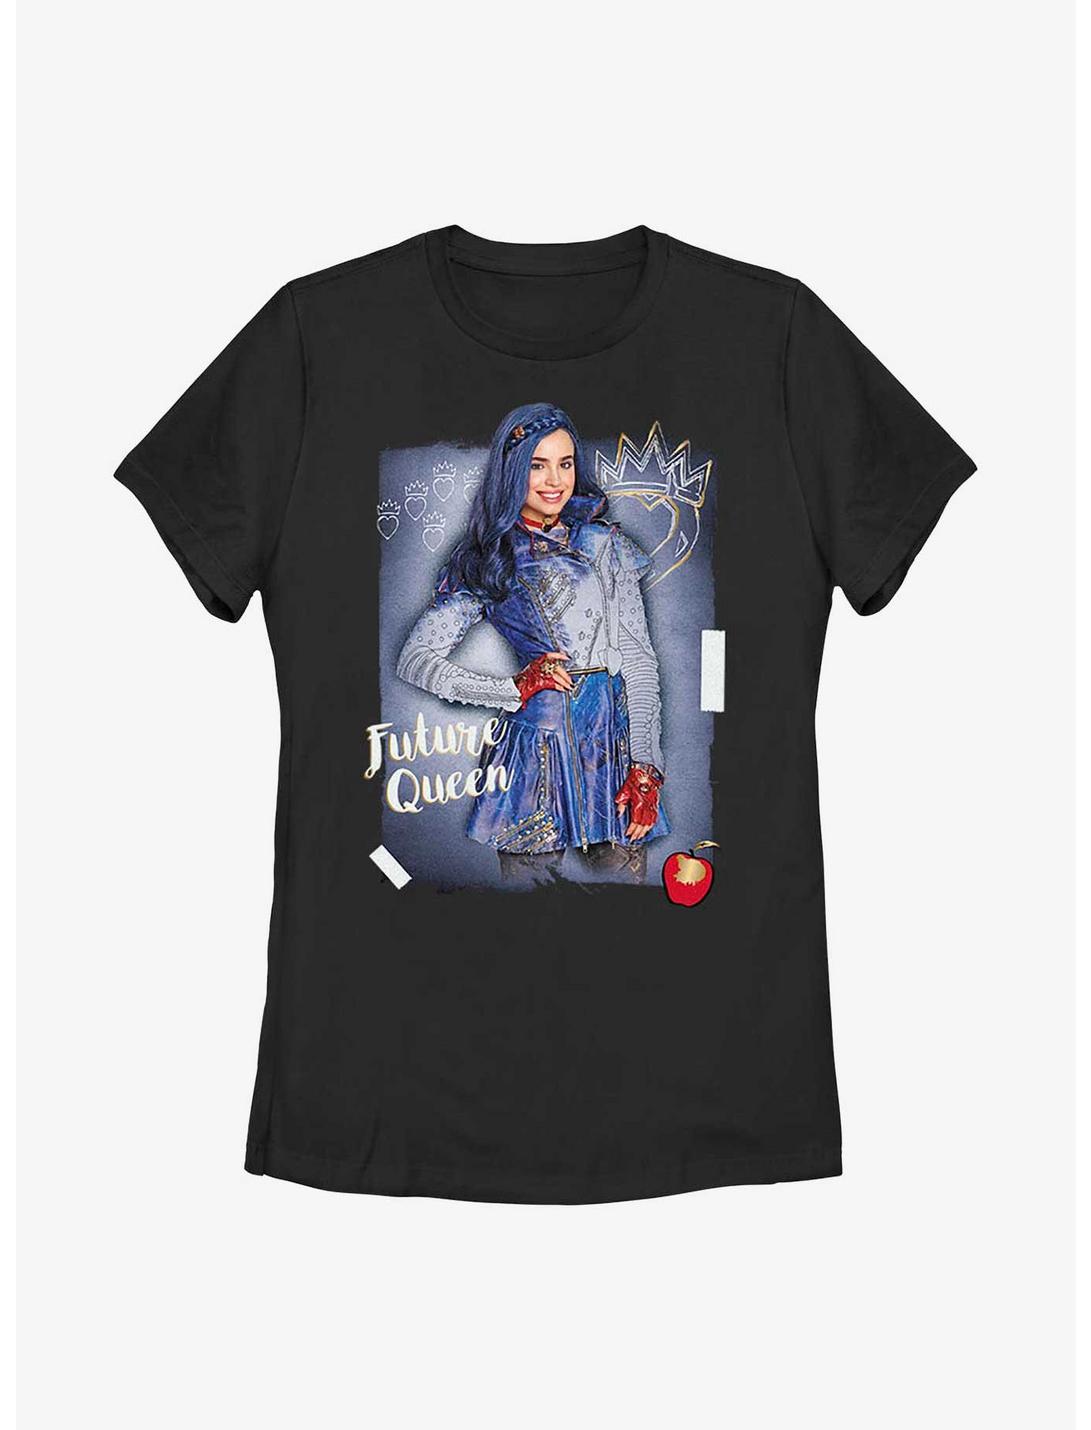 Disney Descendants Evie Queen Of The Future Womens T-Shirt, BLACK, hi-res